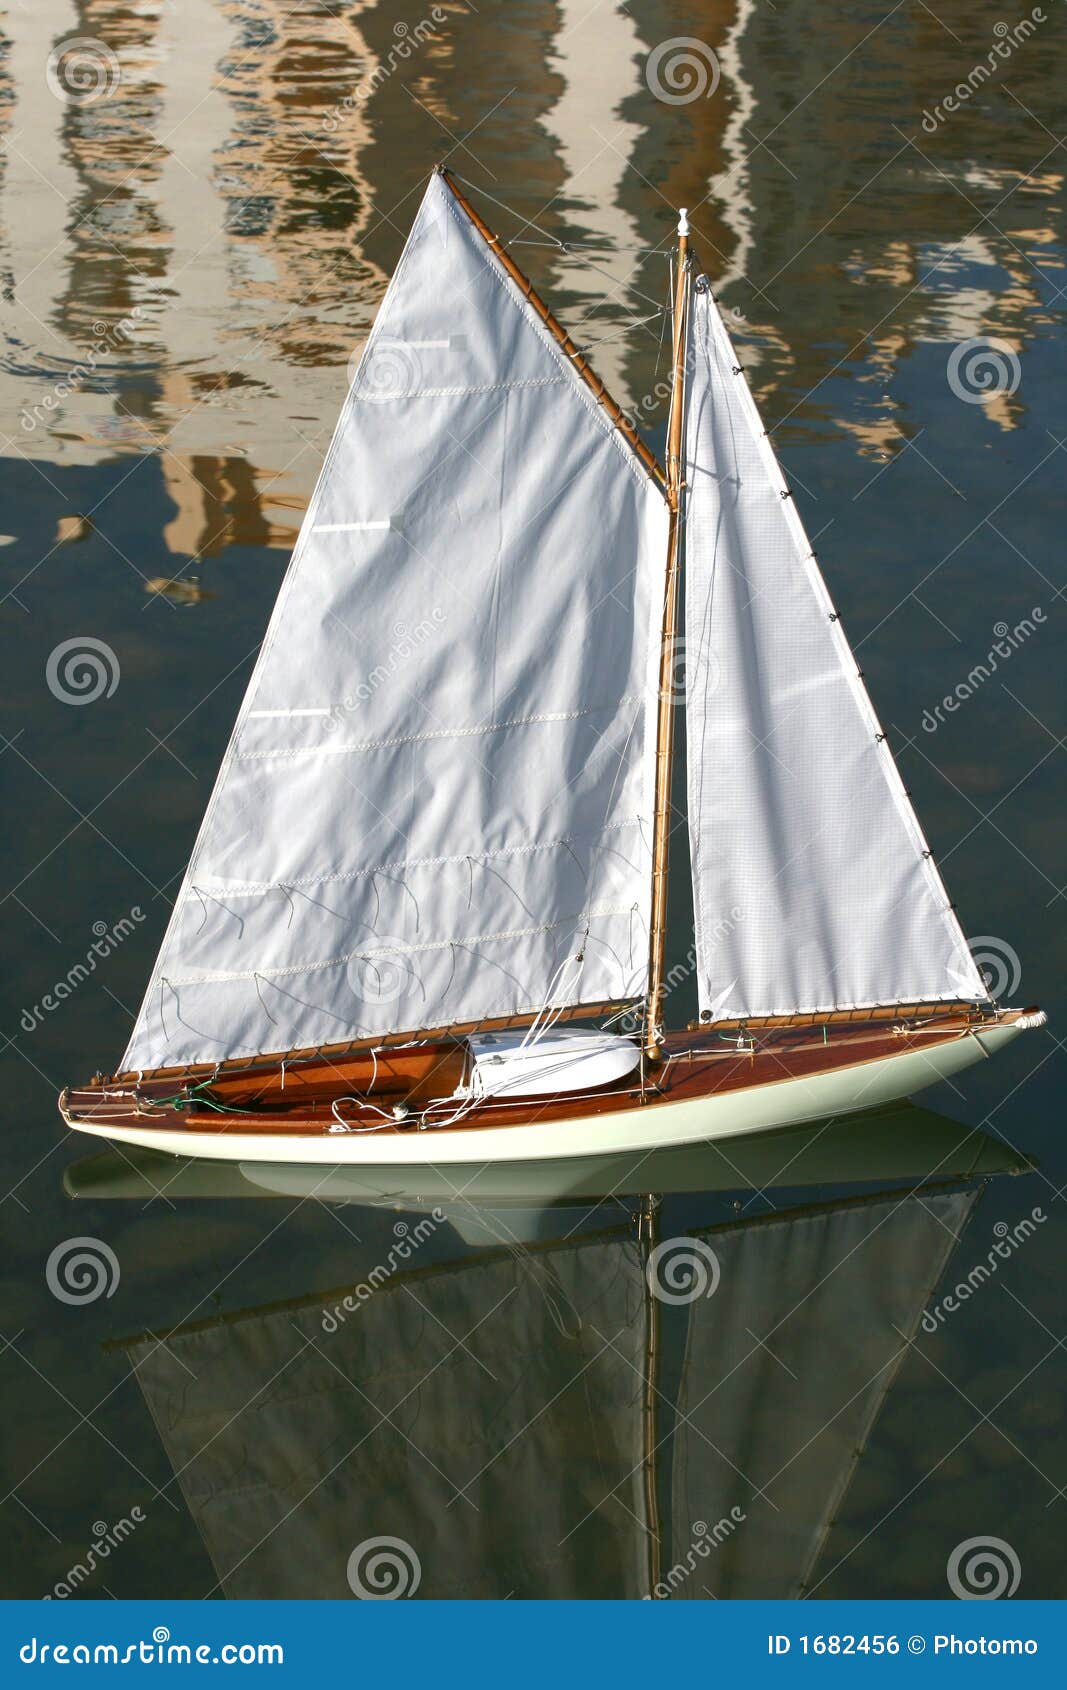 Model Sailing Yachts